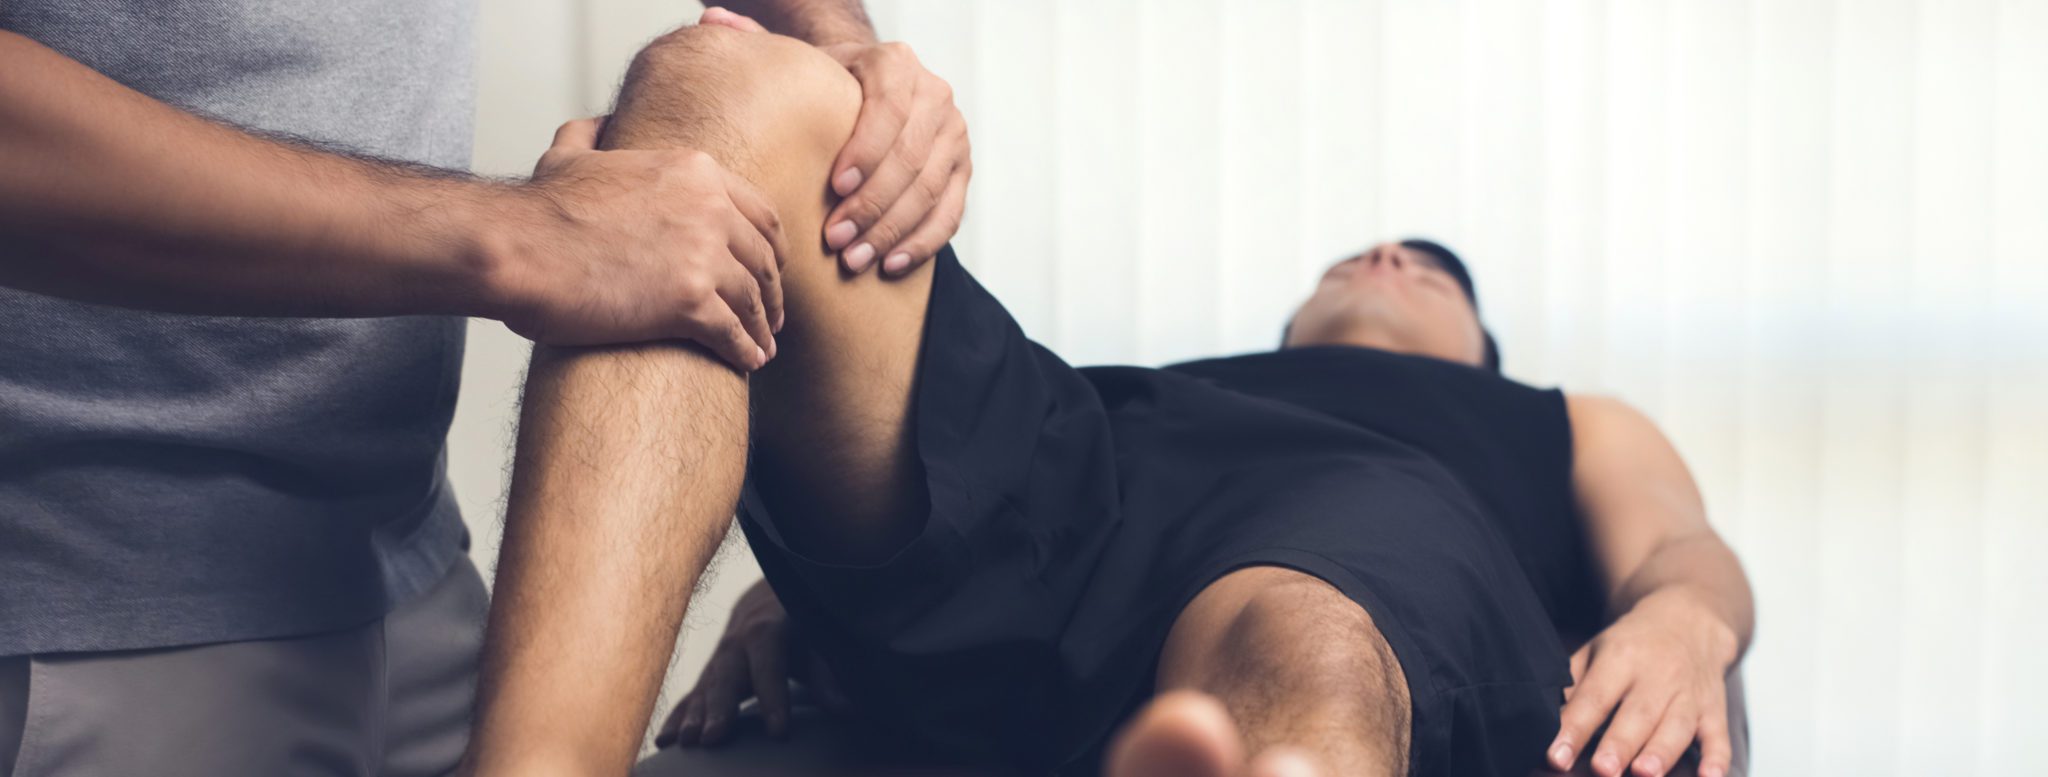 Bilden föreställer en naprapat, kiropraktor eller terapeut som undersöker en knäled på en patient.